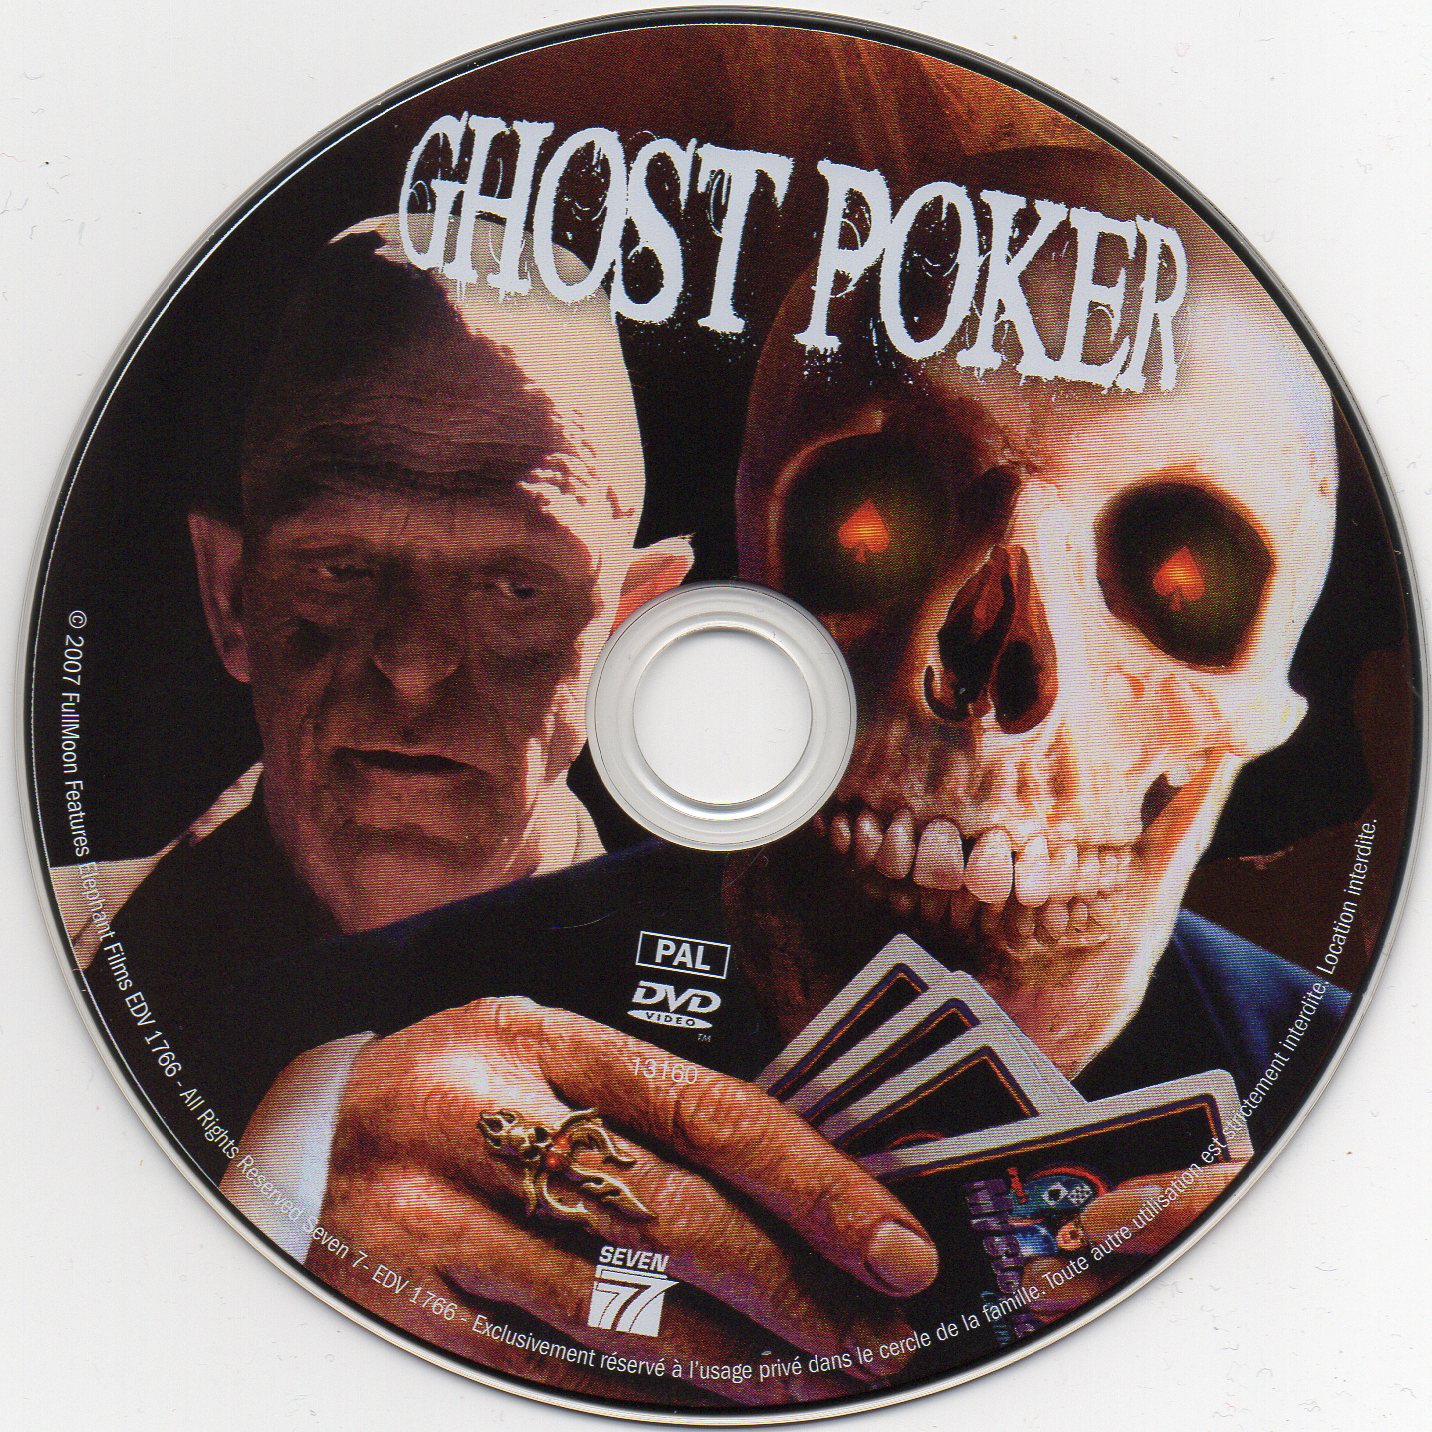 Ghost poker